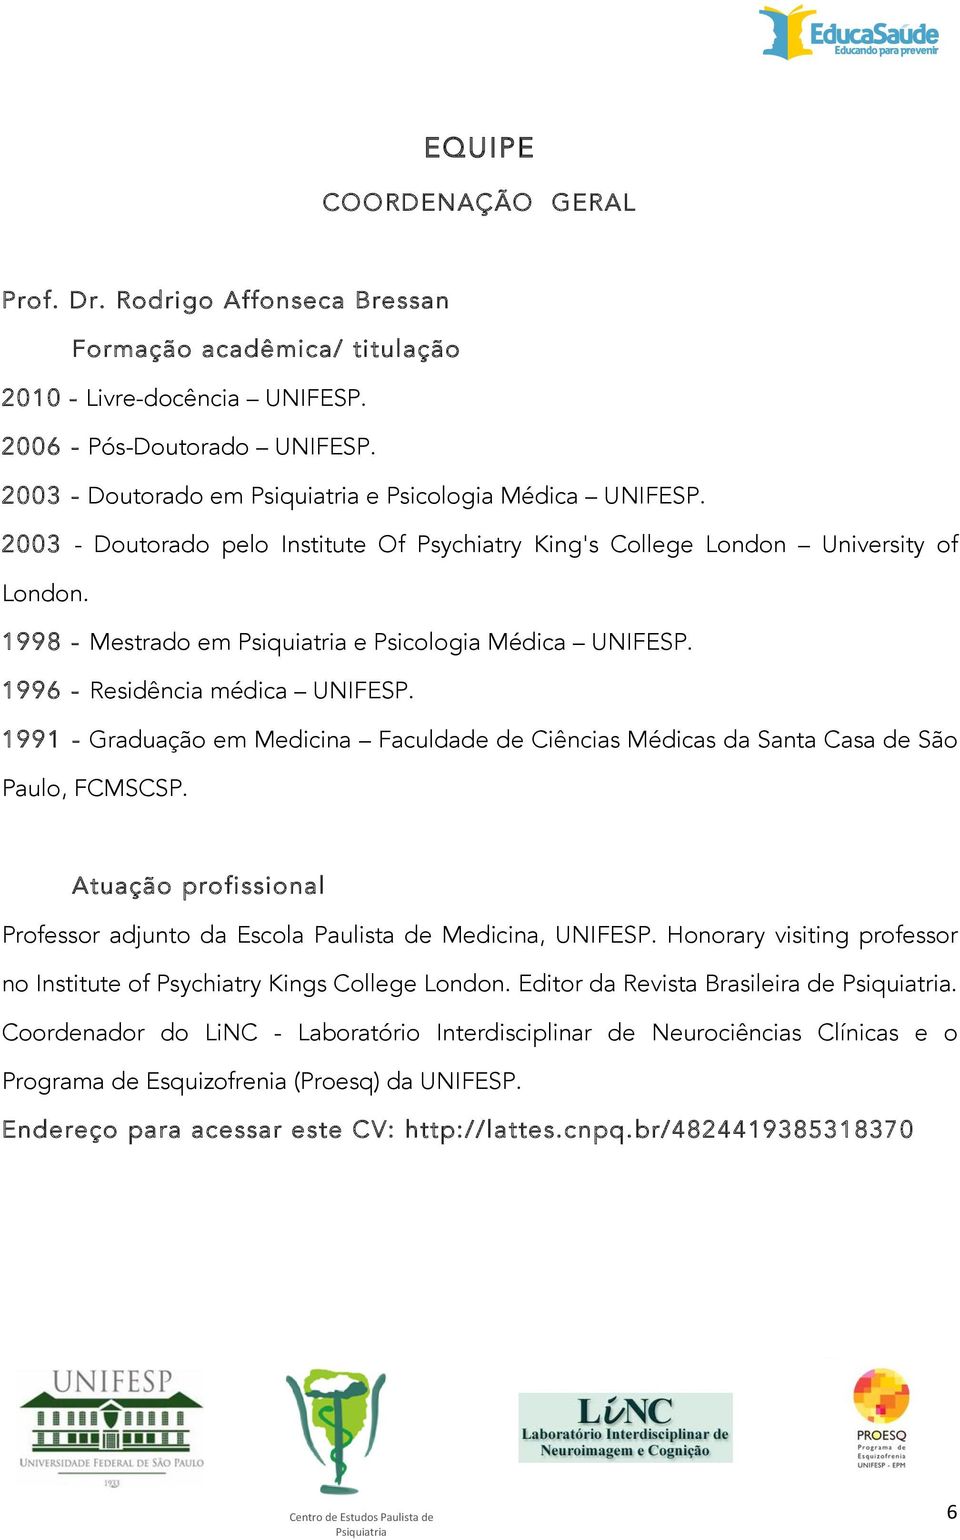 1998 - Mestrado em Psiquiatria e Psicologia Médica UNIFESP. 1996 - Residência médica UNIFESP. 1991 - Graduação em Medicina Faculdade de Ciências Médicas da Santa Casa de São Paulo, FCMSCSP.